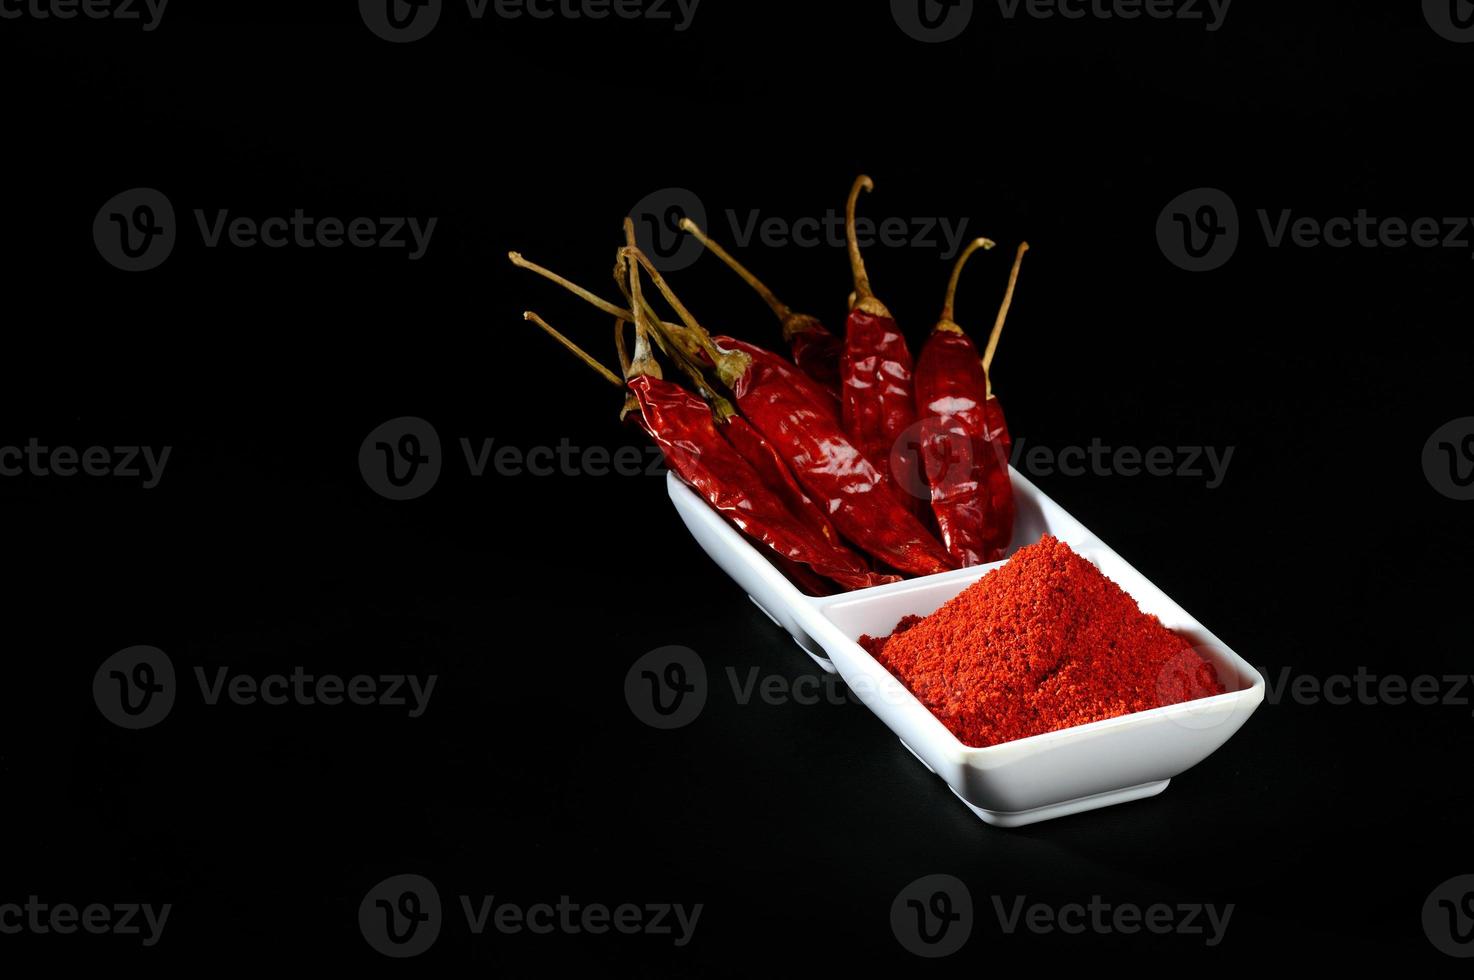 kil poeder met rode kilte in witte plaat, gedroogde pepers op zwarte achtergrond foto